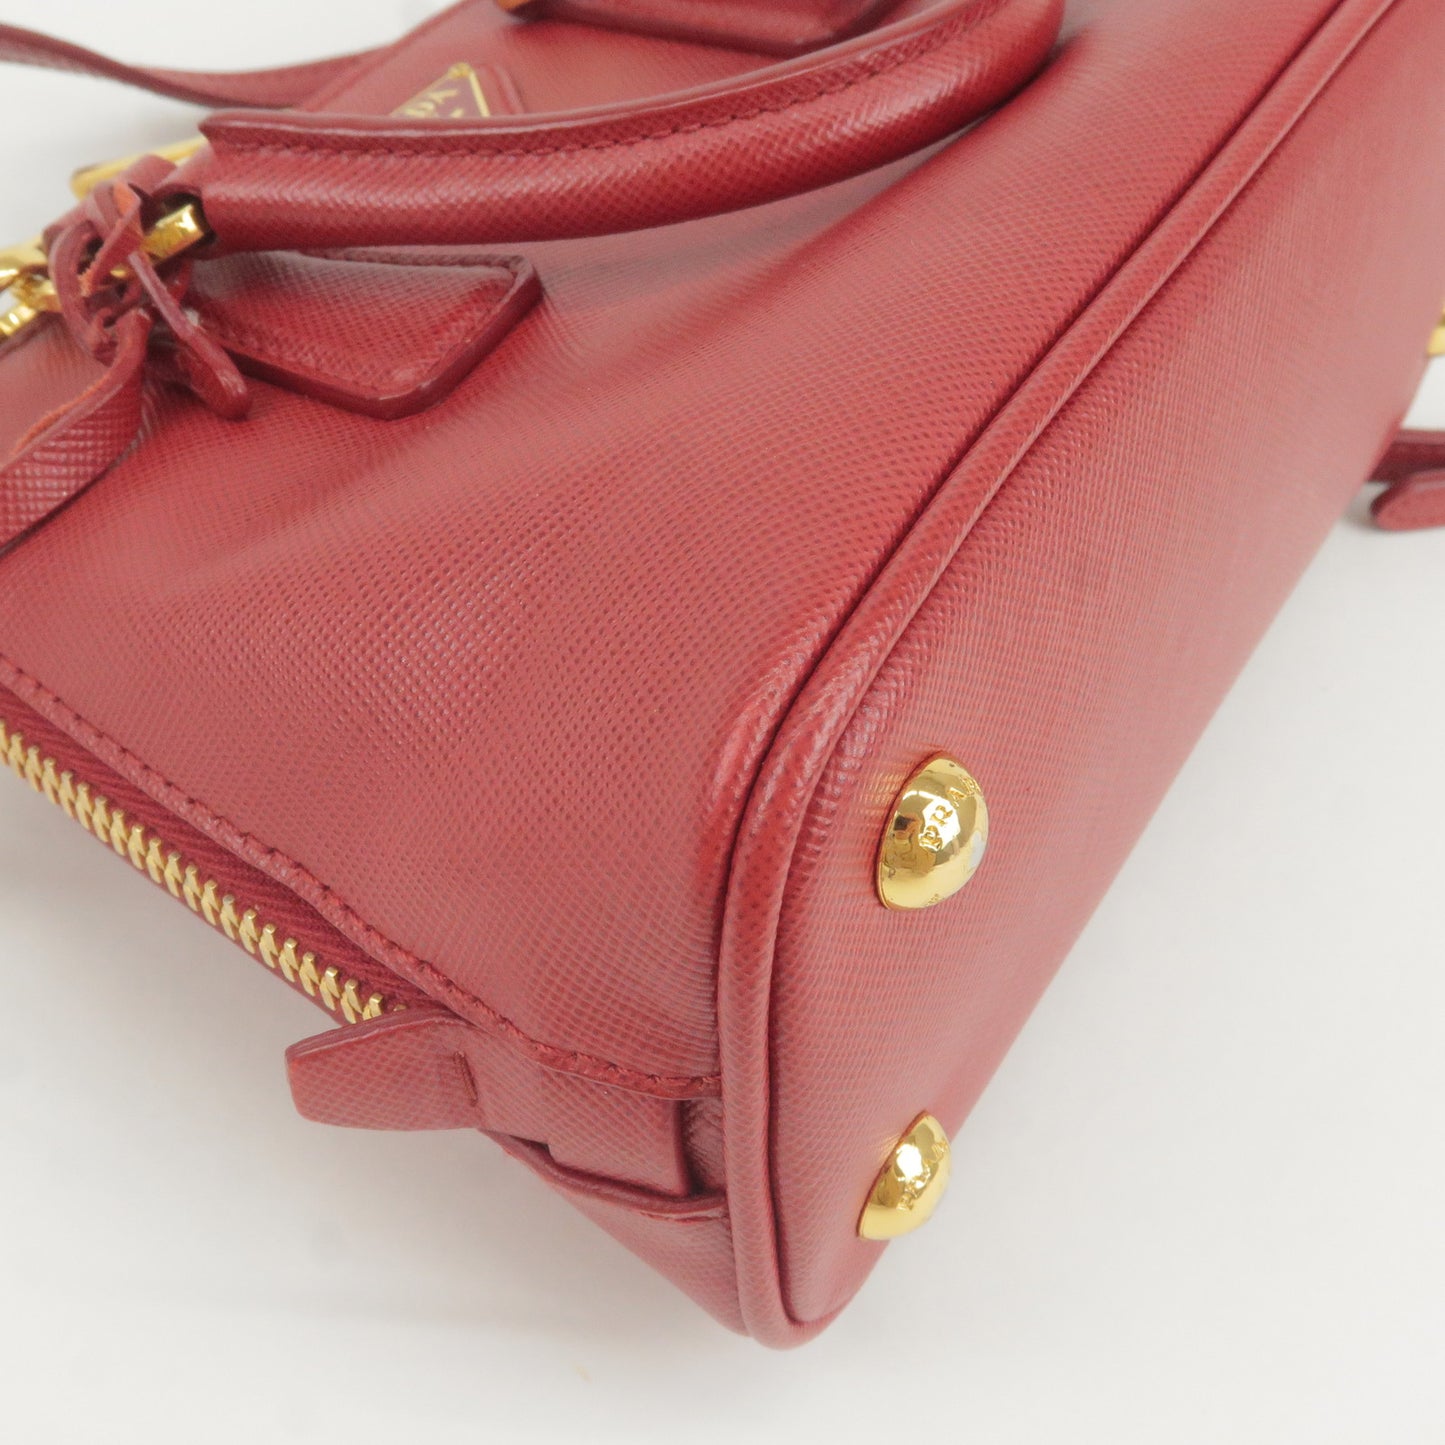 PRADA Leather Promenade Mini 2Way Bag Shoulder Bag Red BL0851